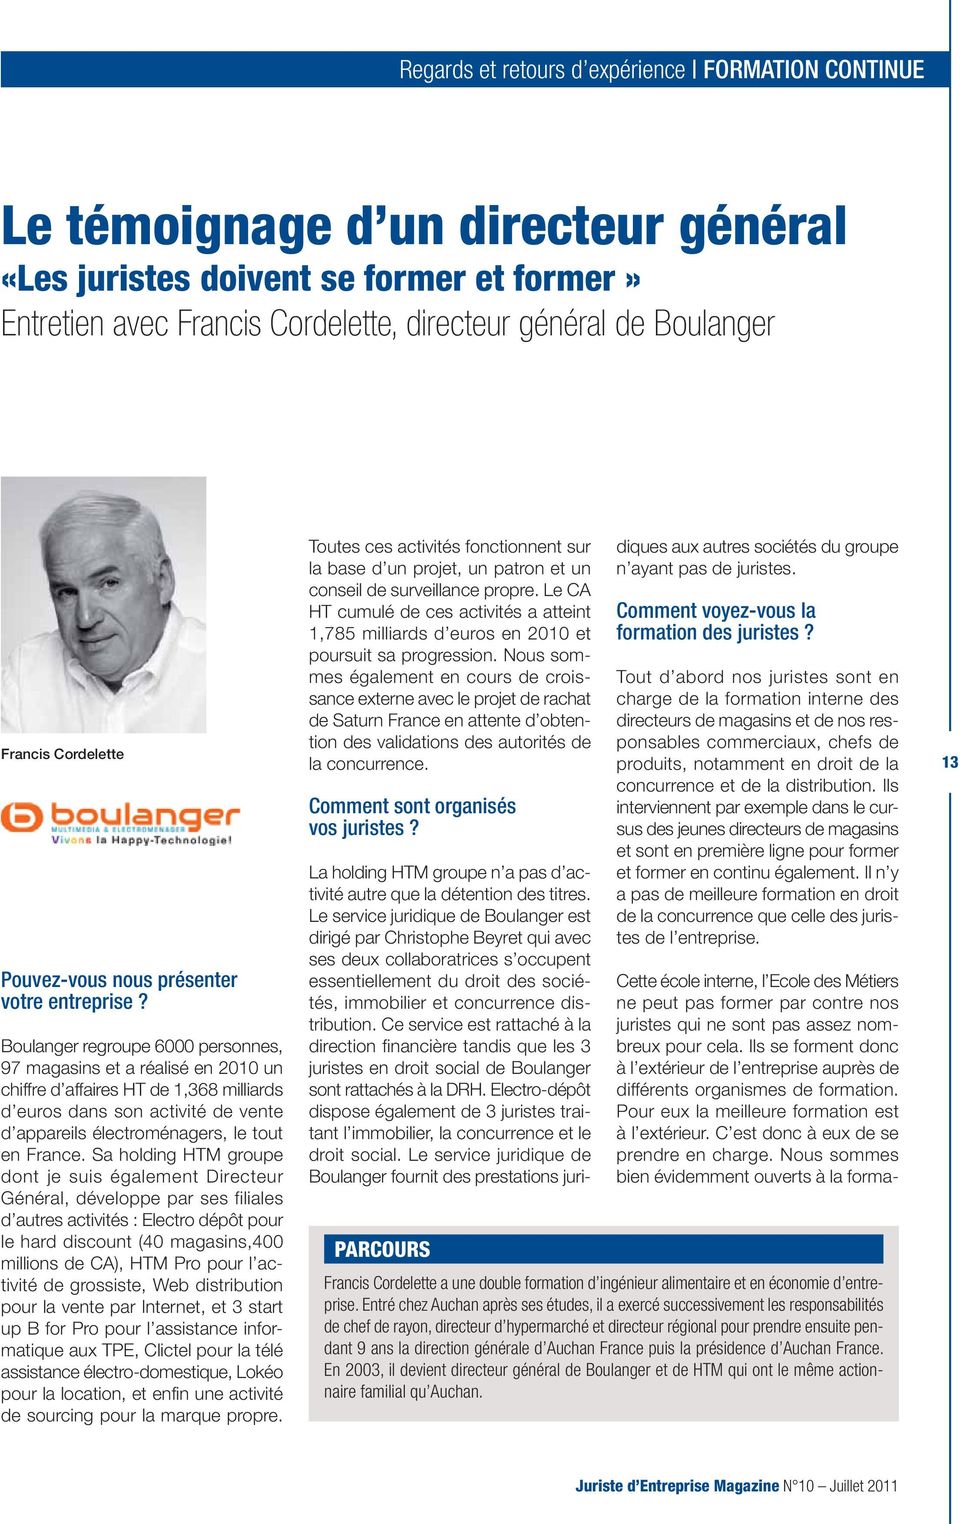 Boulanger regroupe 6000 personnes, 97 magasins et a réalisé en 2010 un chiffre d affaires HT de 1,368 milliards d euros dans son activité de vente d appareils électroménagers, le tout en France.